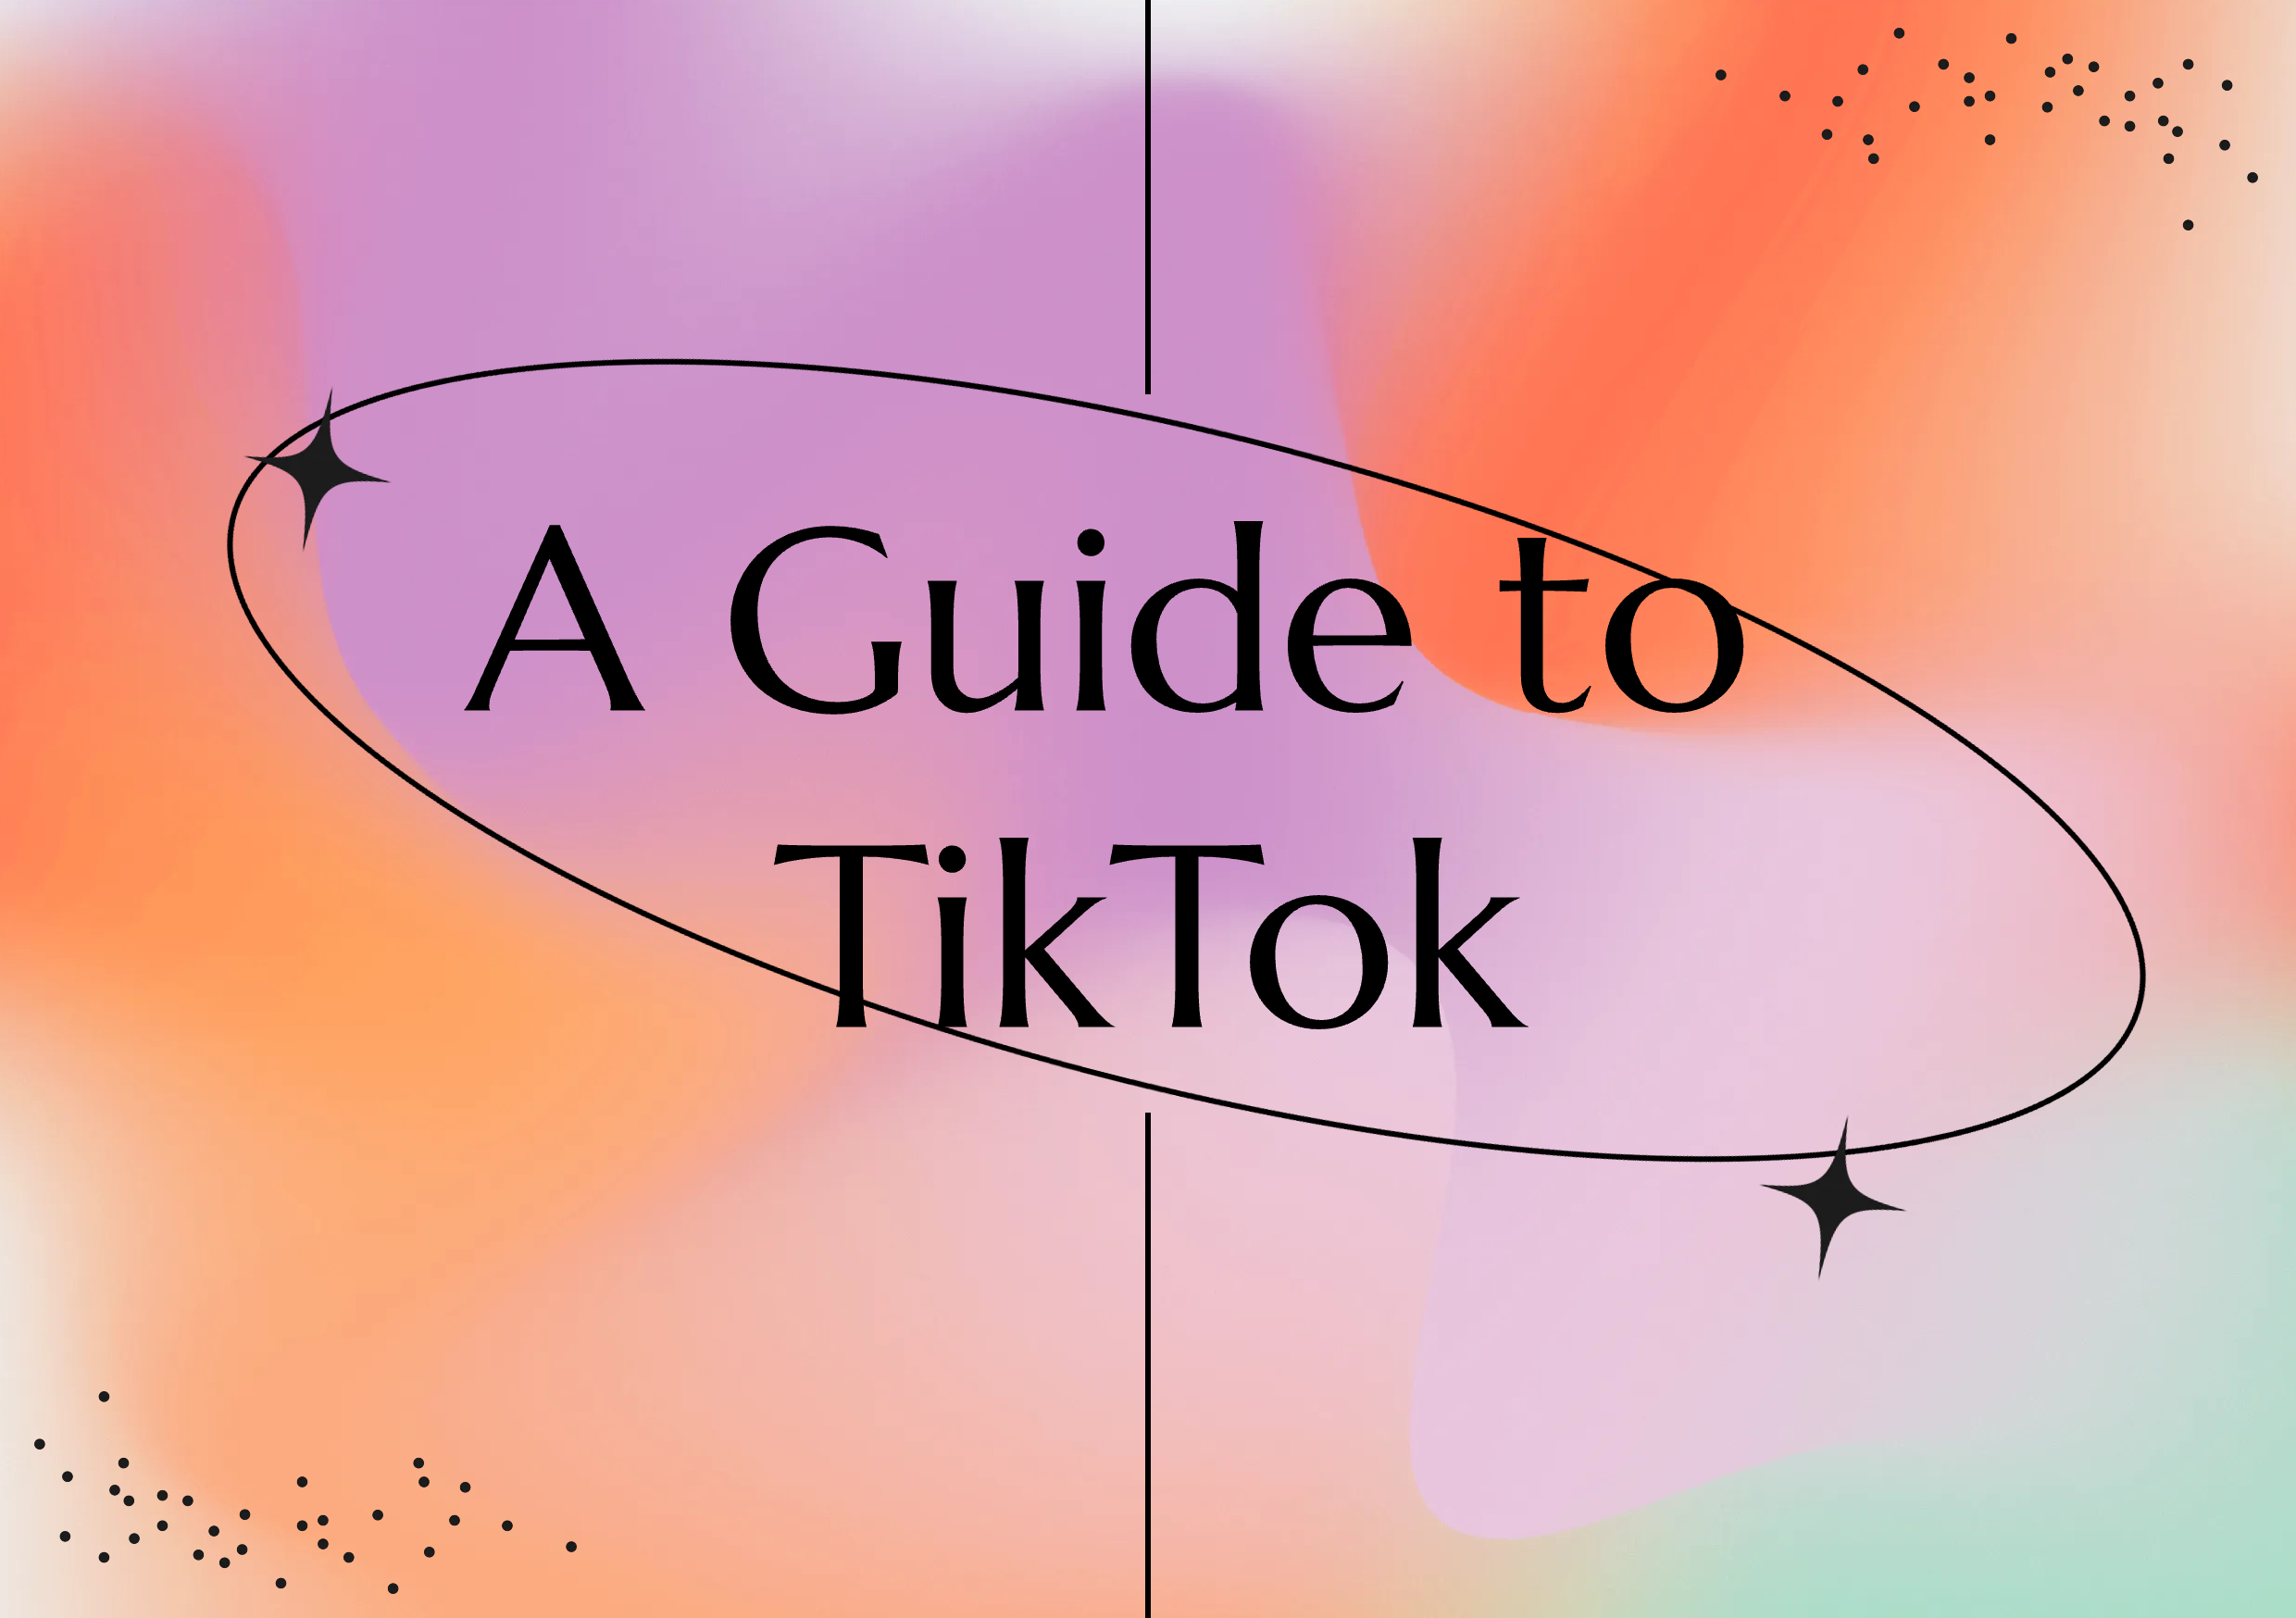 Step Up Your TikTok Game: A Comprehensive Guide to Pixlr's TikTok Templates